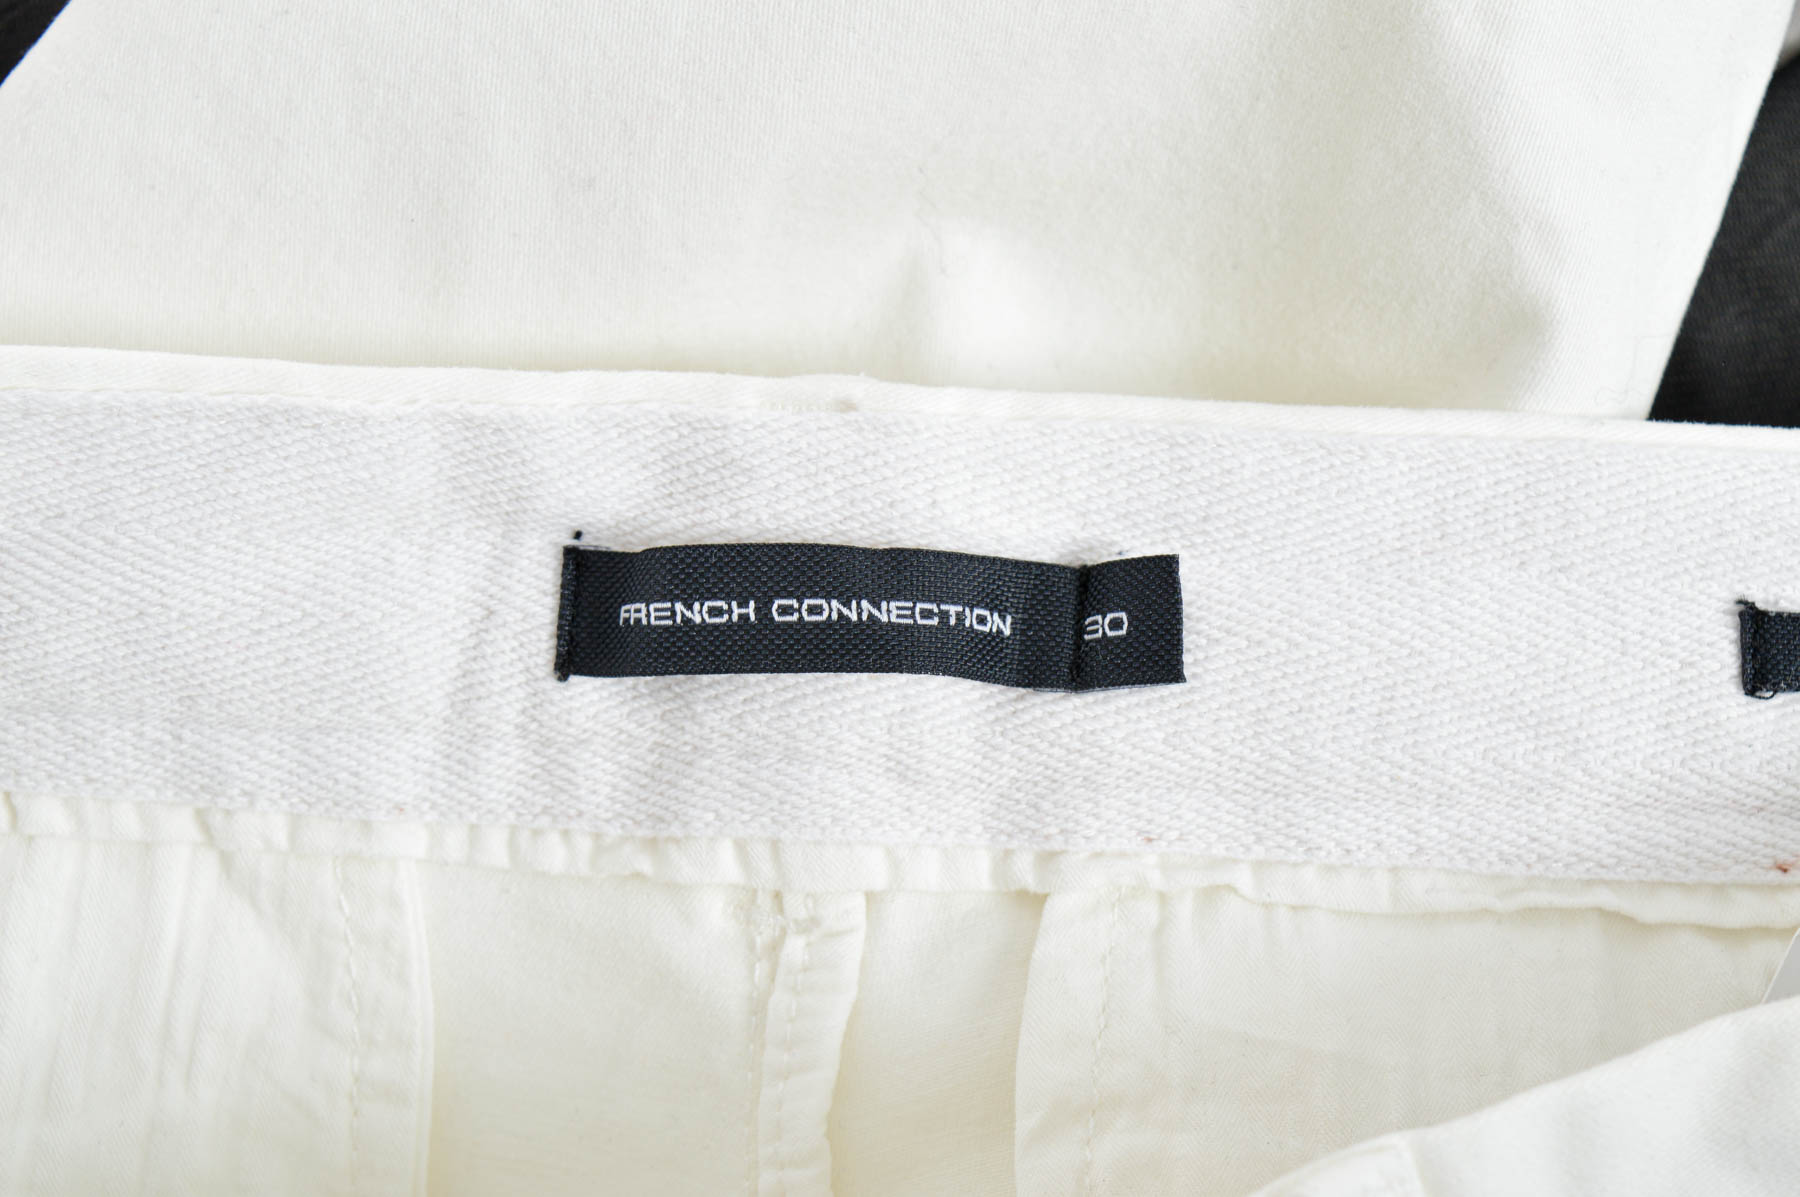 Pantalon pentru bărbați - French Connection - 2